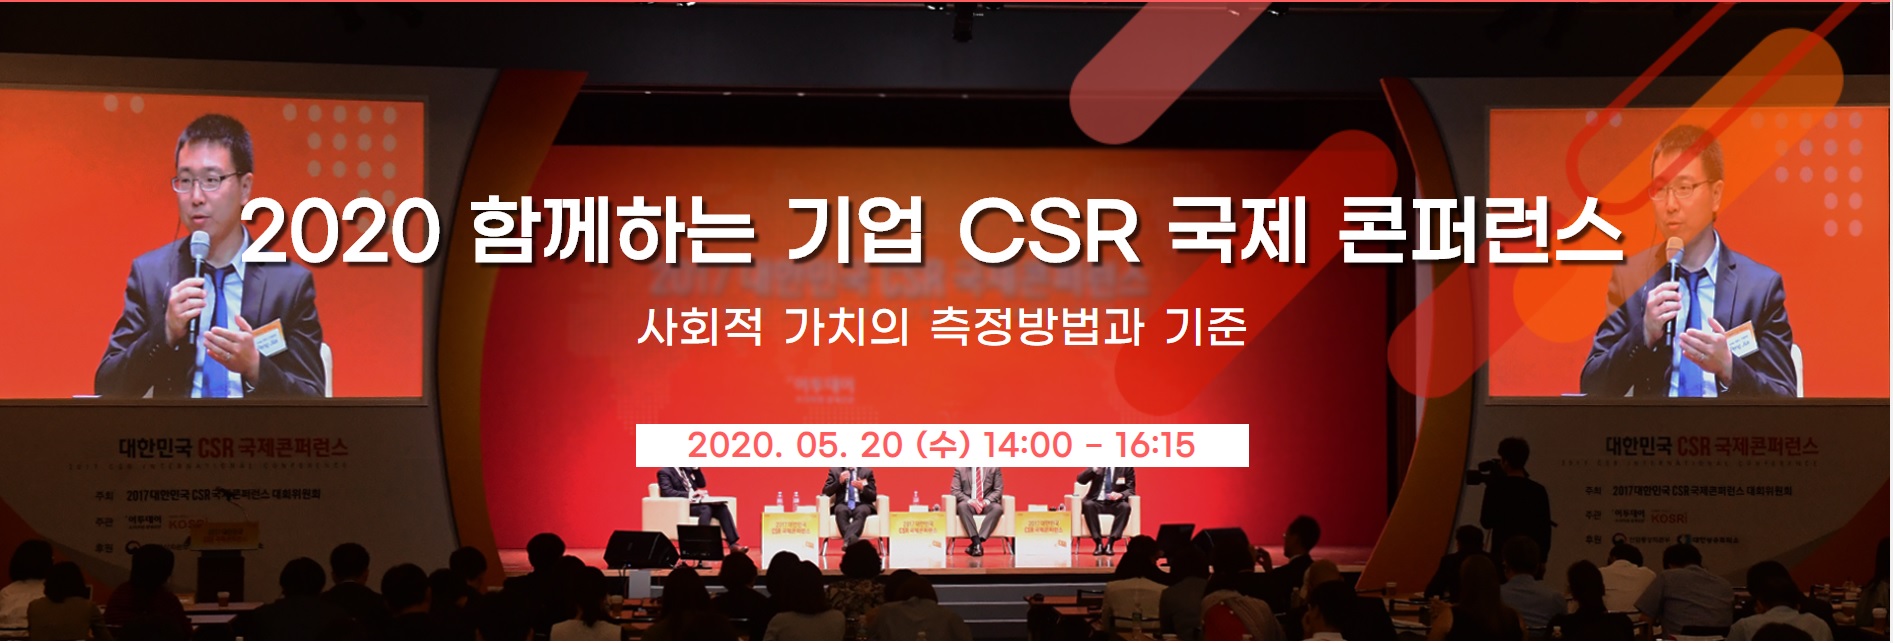 2020 함께하는 기업 CSR 국제 콘퍼런스  사회적 가치의 측정방법과 기준 2020.05.20(수) 14:00-16:15 박성훈 실장의 발표 사진